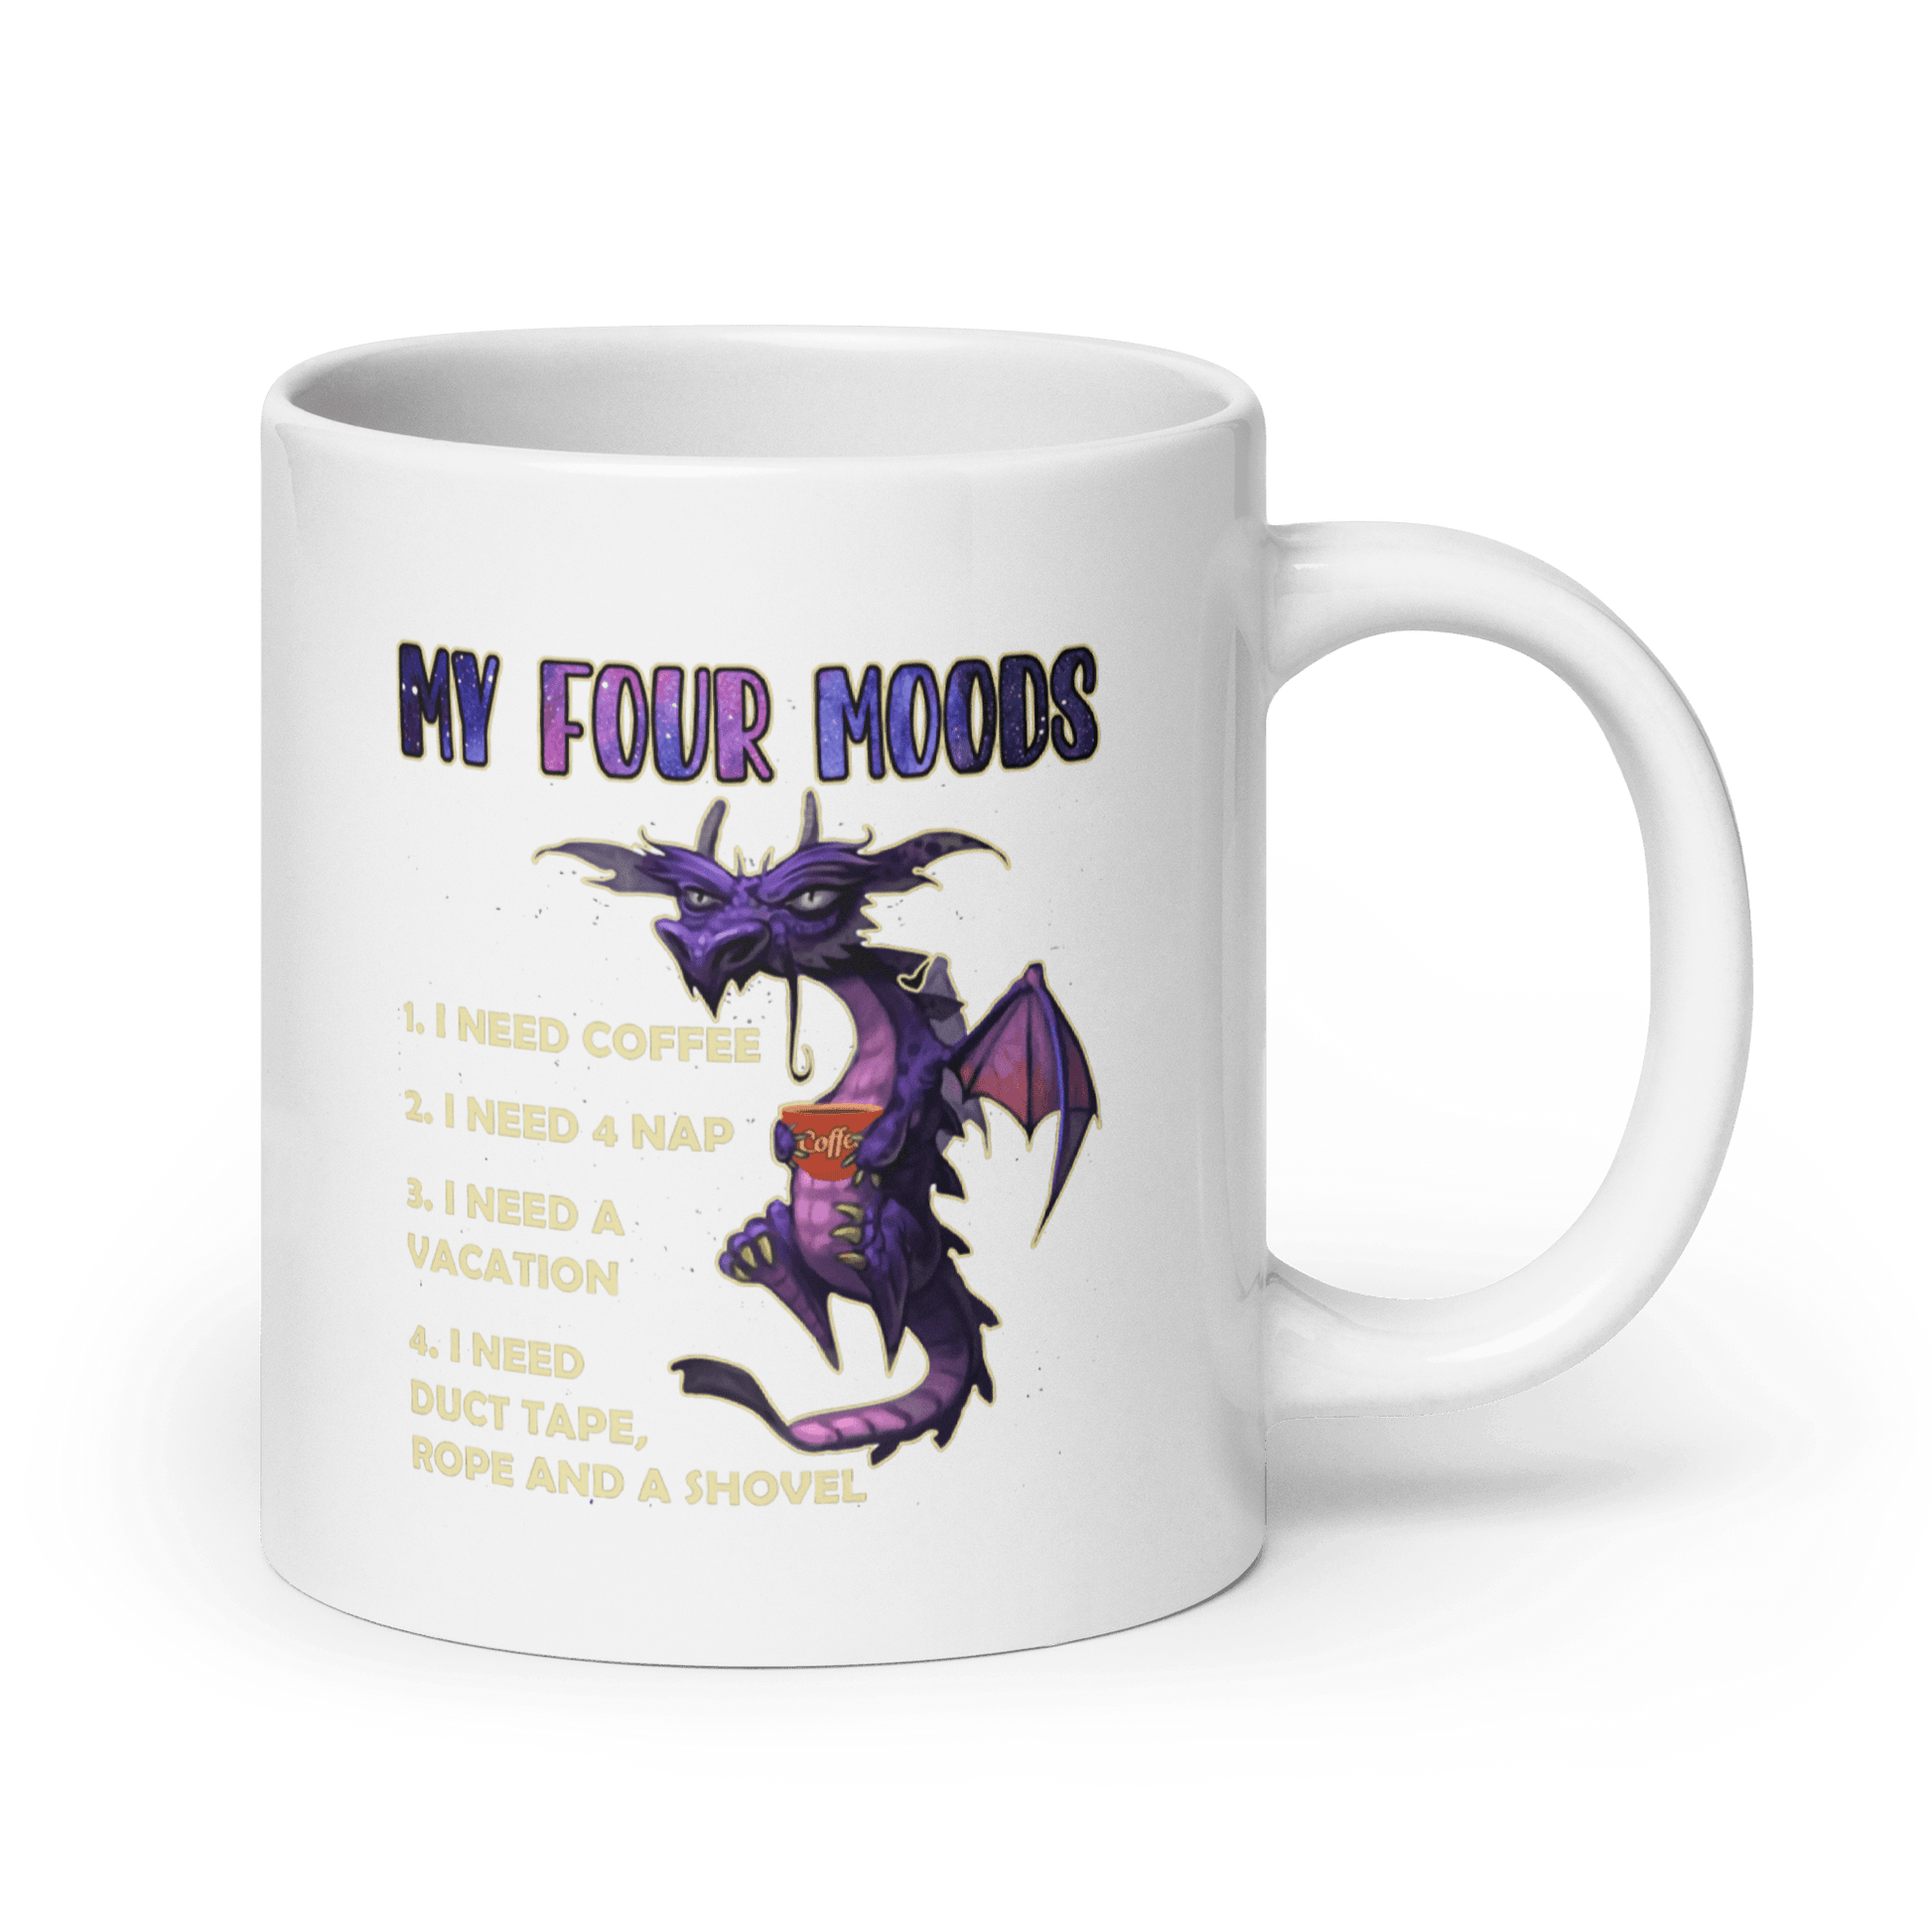 Purple Dragon Mug - L & M Kee, LLC